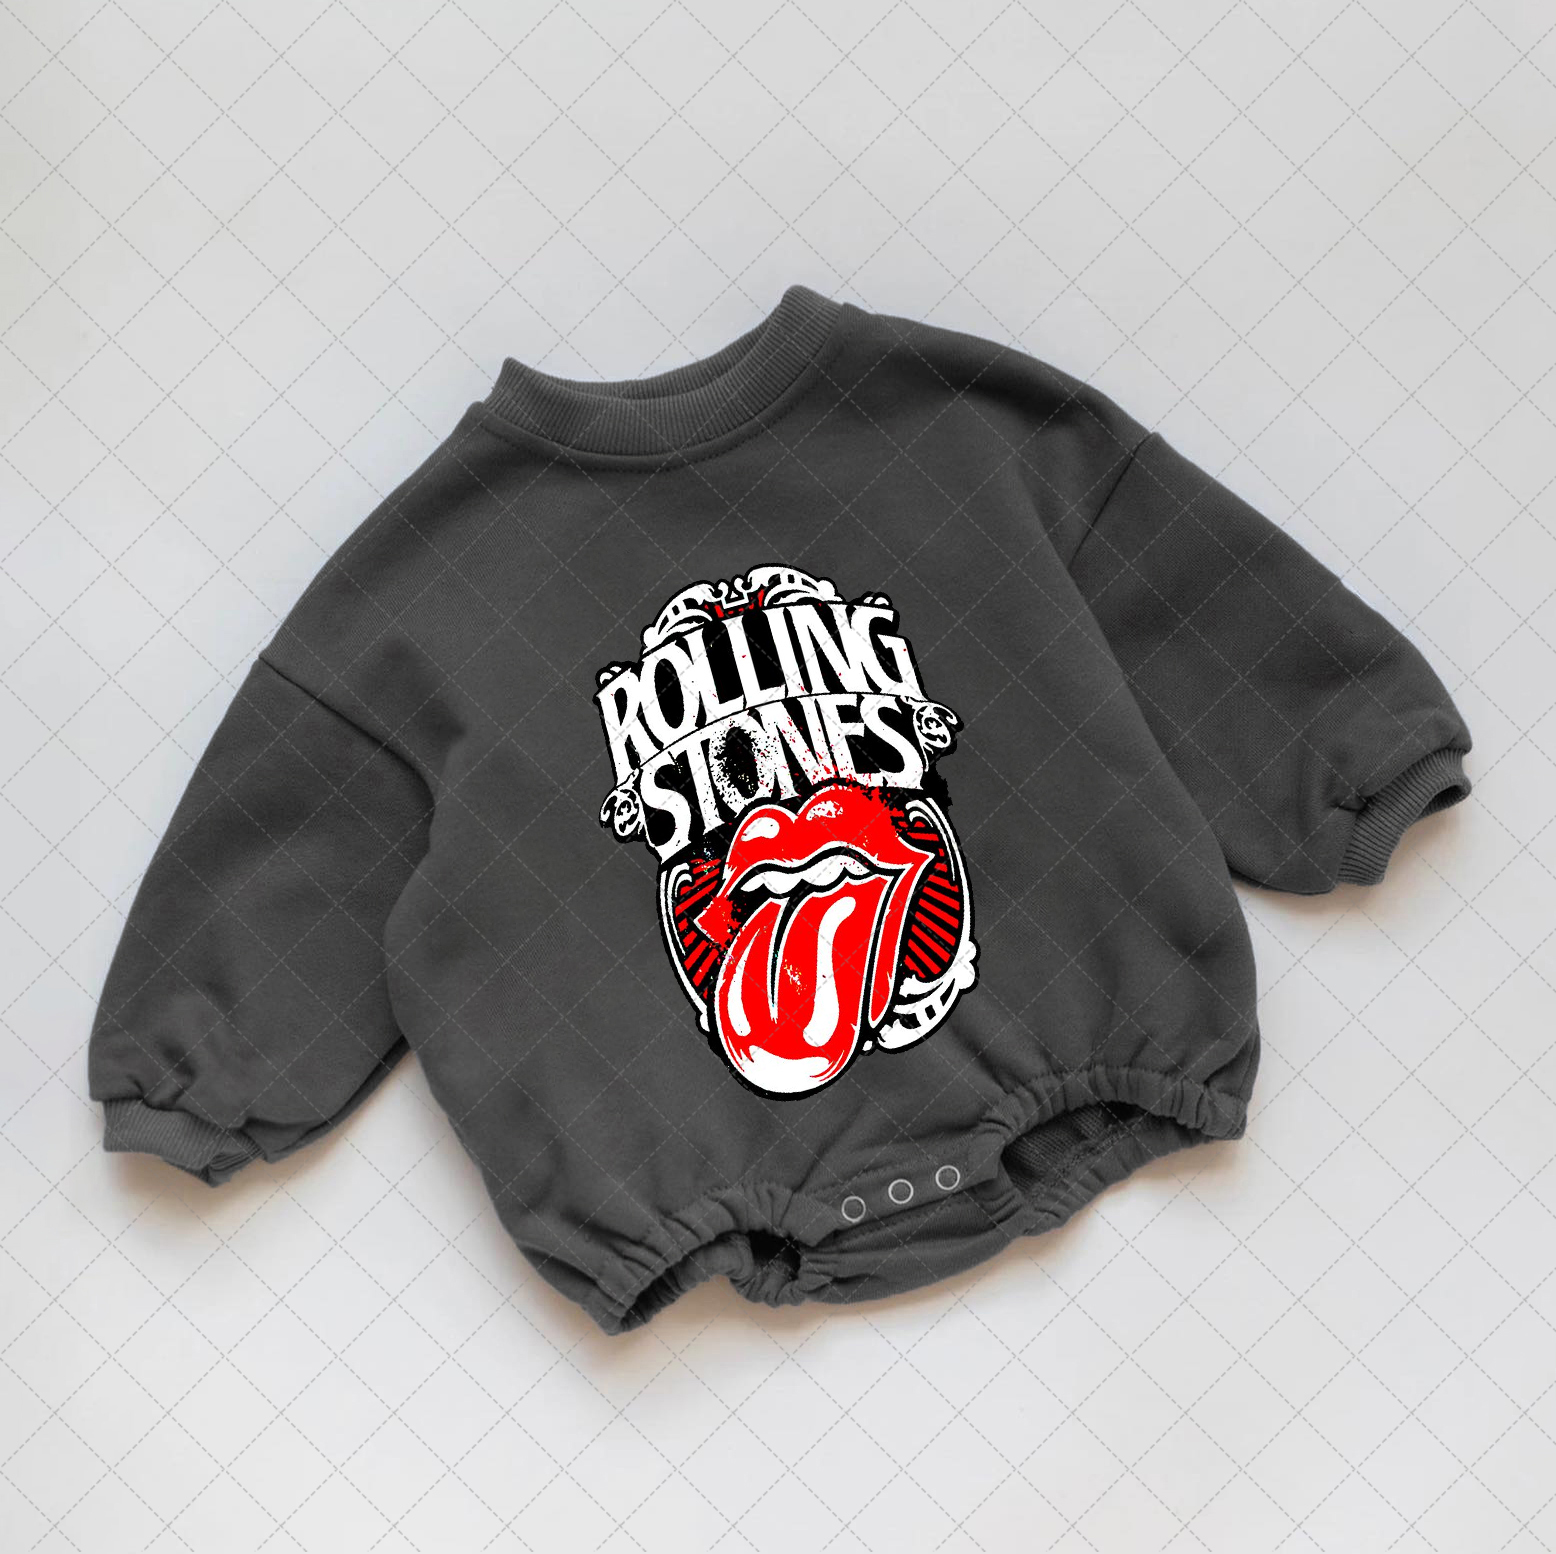 Baby Rolling Stones Romper